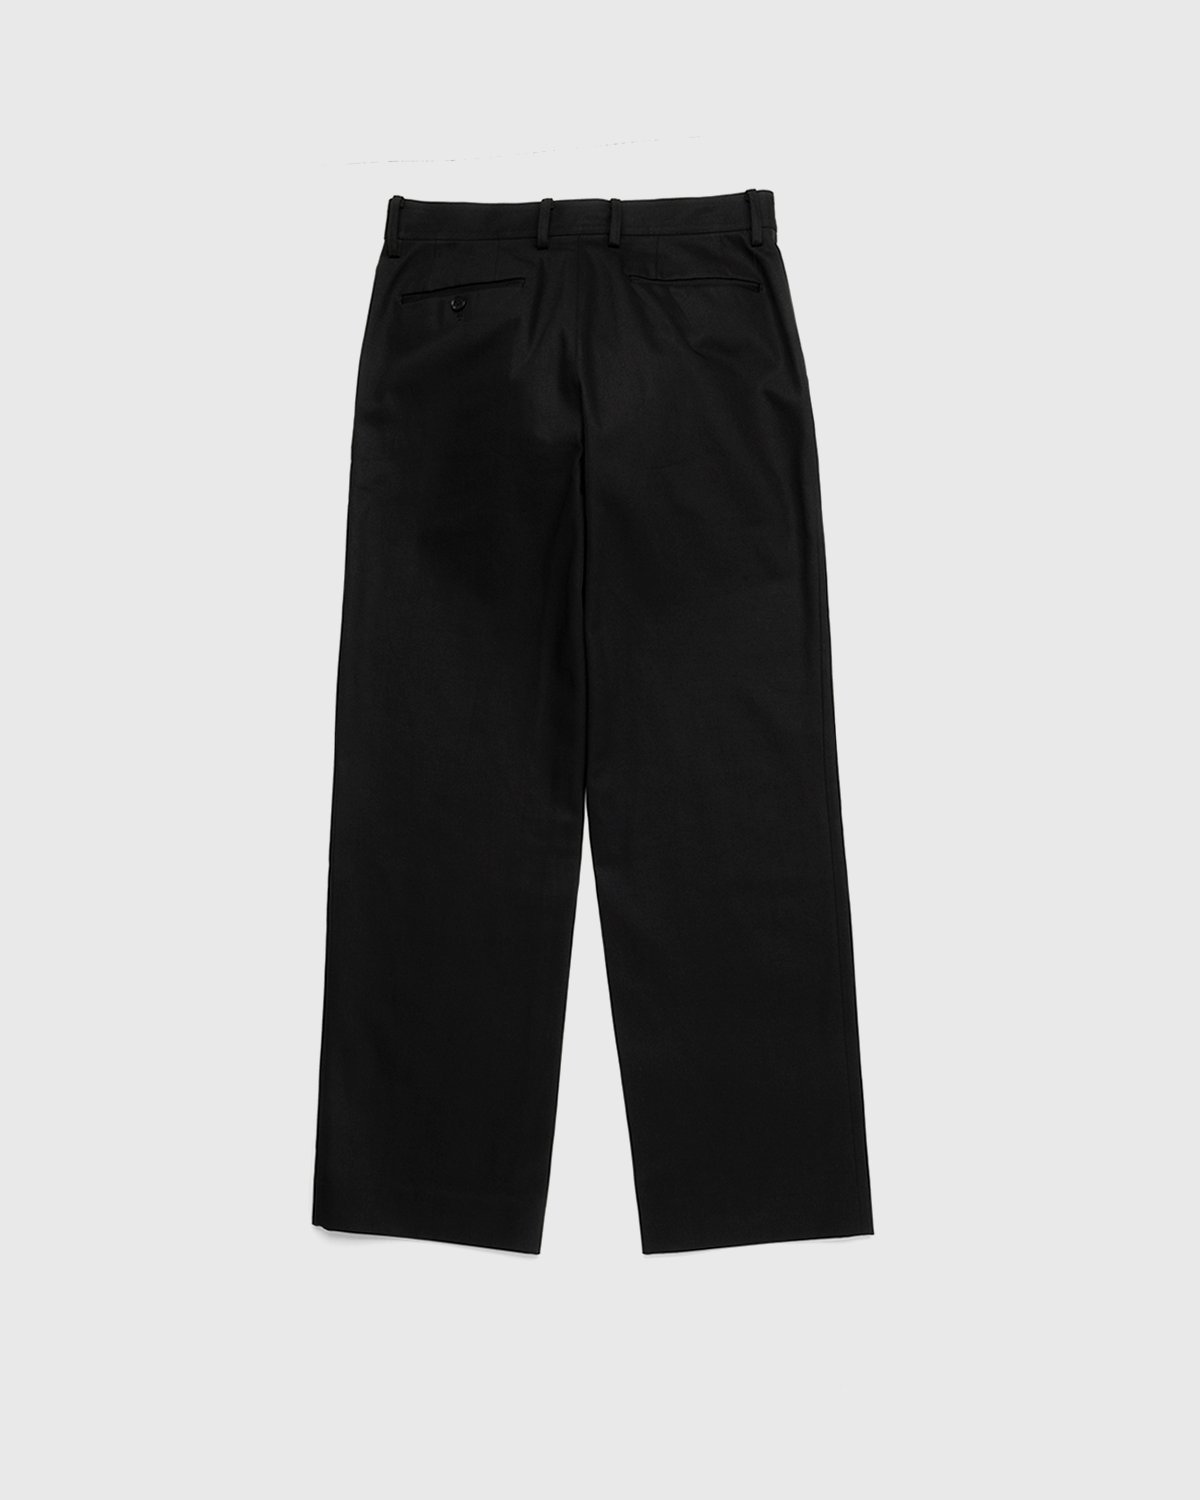 Auralee – Cotton Woven Pants Black - Pants - Black - Image 2